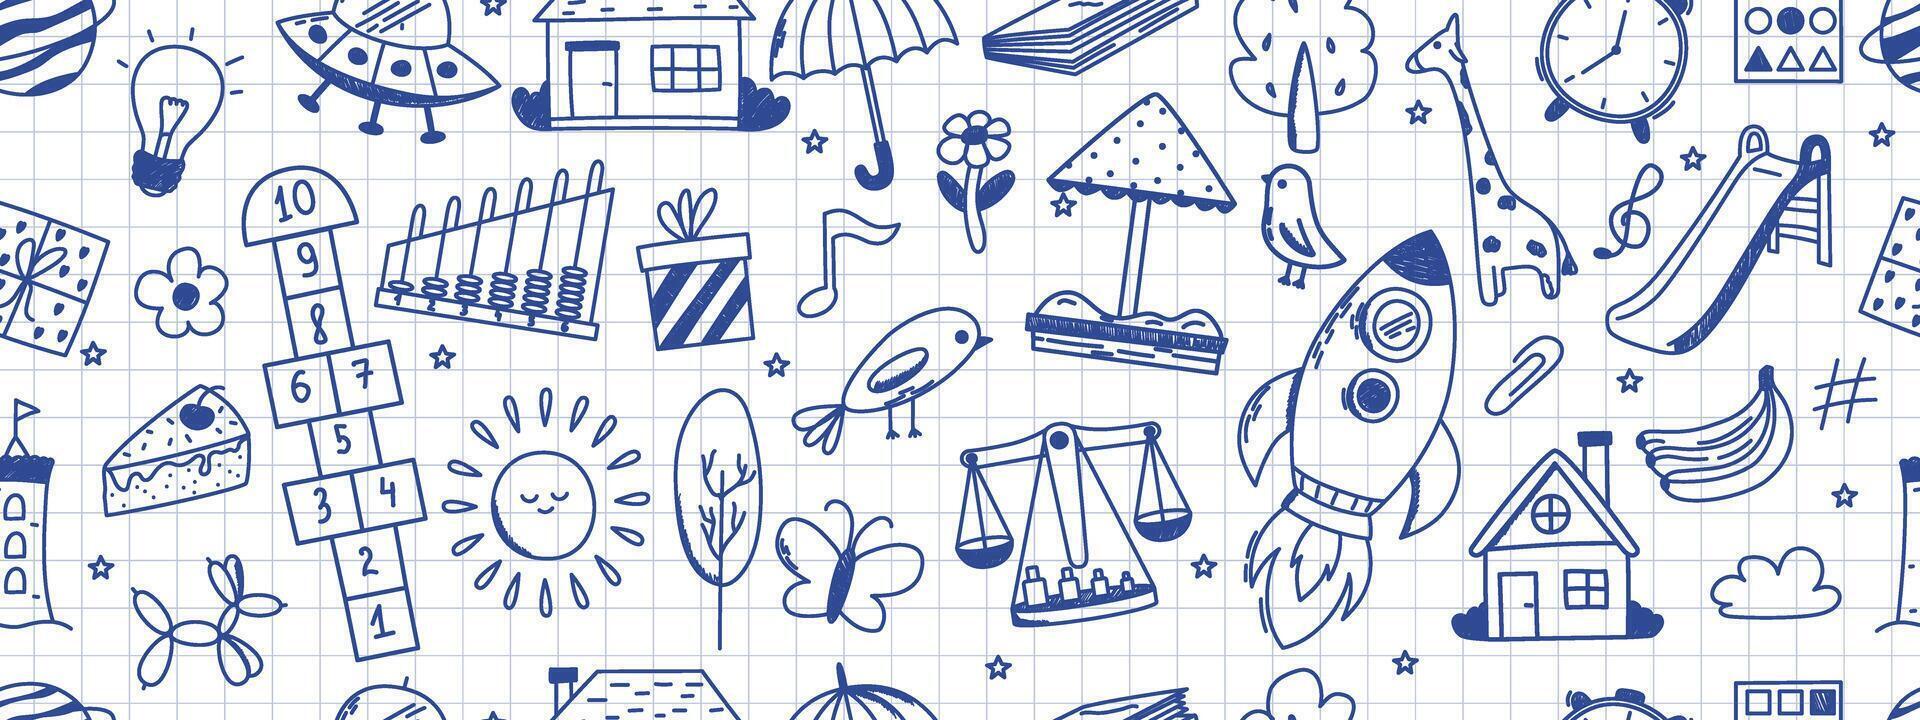 sömlös mönster med dagis doodles. fjäril, leksaker, blomma, paraply, hus, Sol, träd, djur och Övrig element. Scribbled med krita textur. vektor